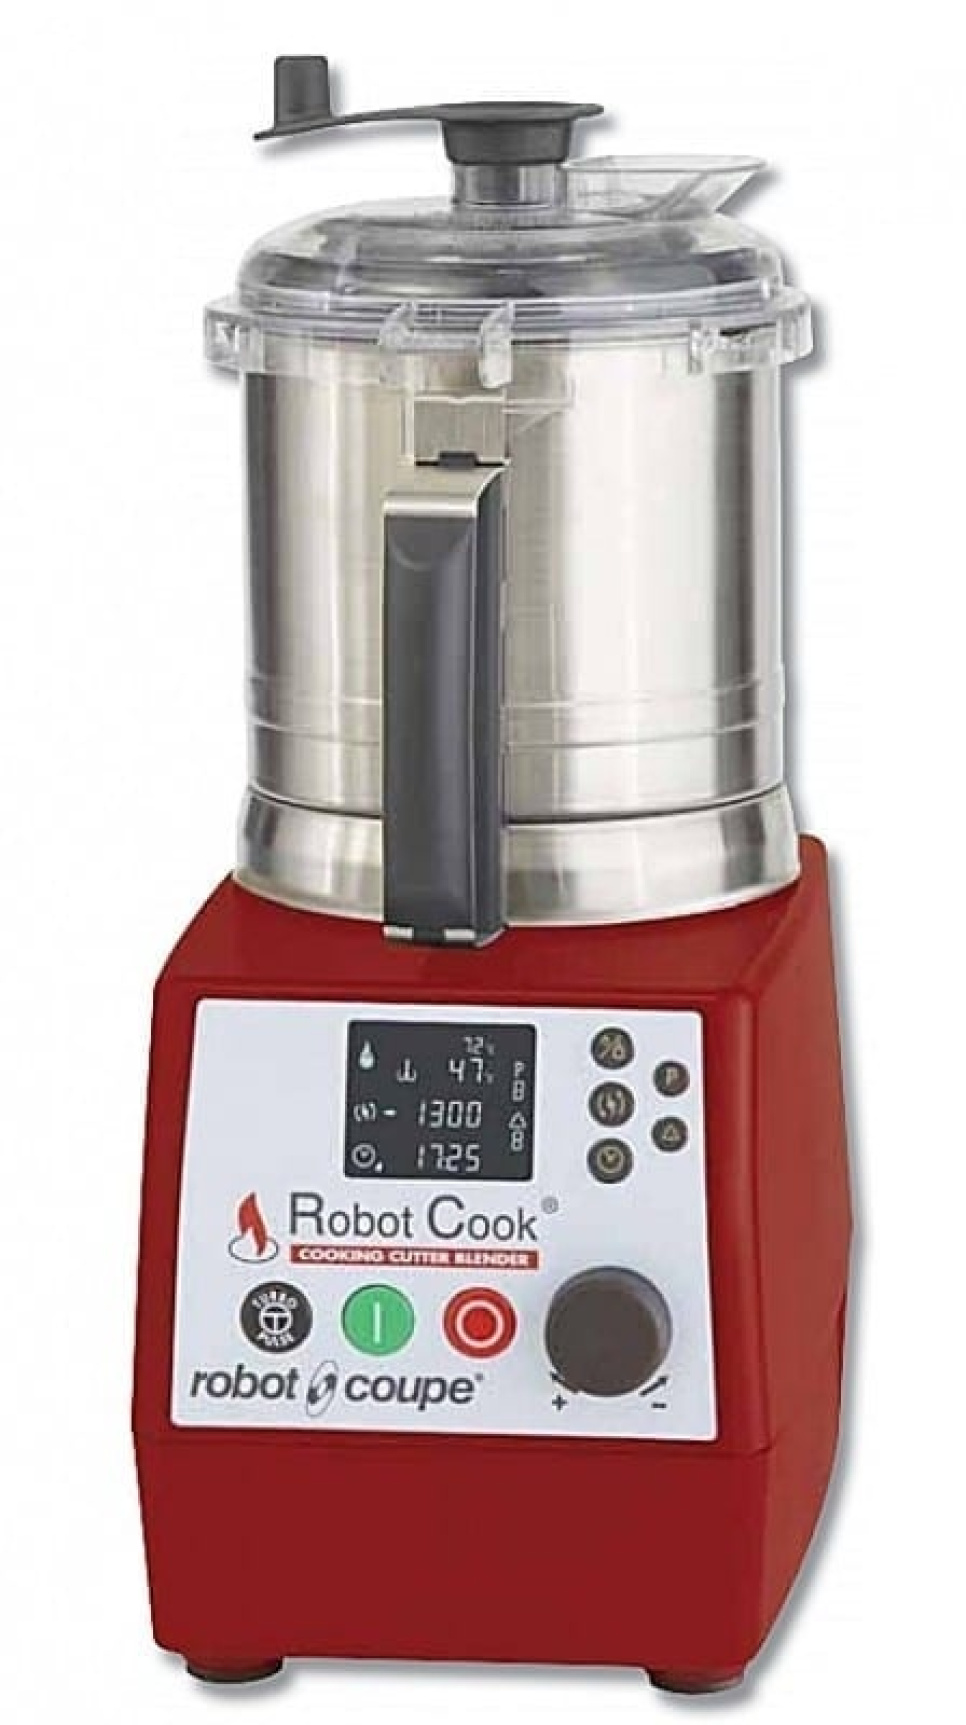 Szybki rozdrabniacz z funkcją podgrzewania - Robot Cook 43000R w grupie Urządzenia kuchenne / Mieszaj i siekaj / Blendery w The Kitchen Lab (1469-13004)